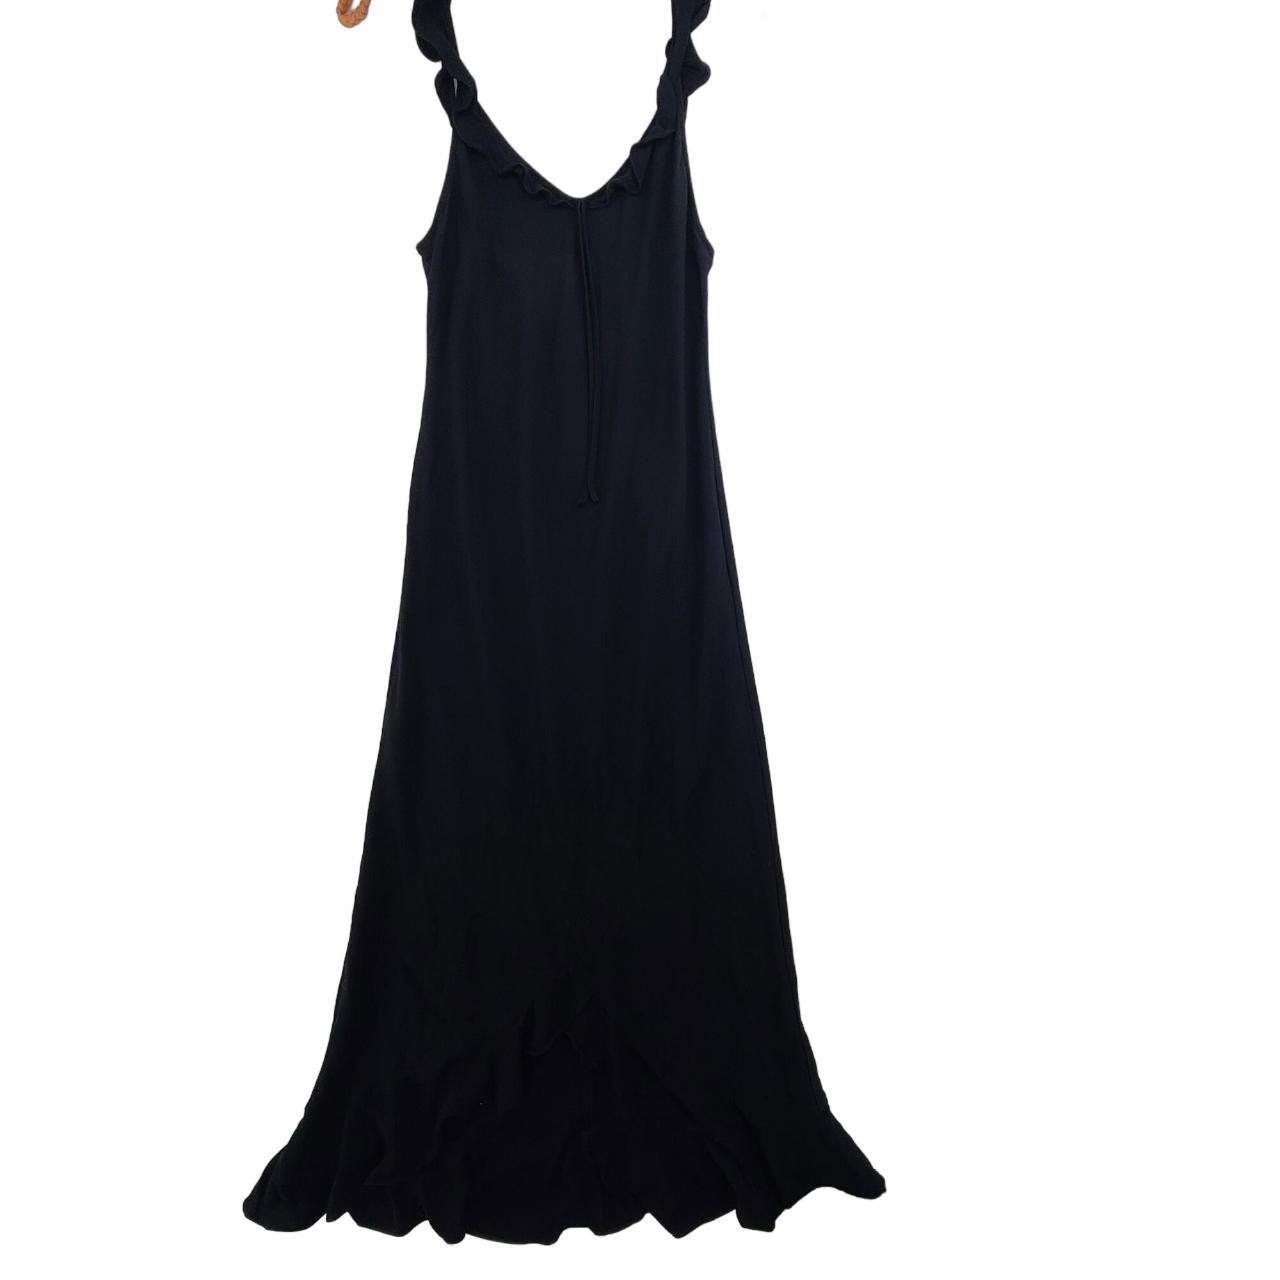 Aritzia Wilfred Donna Dress Women's Sleeveless Maxi... - Depop